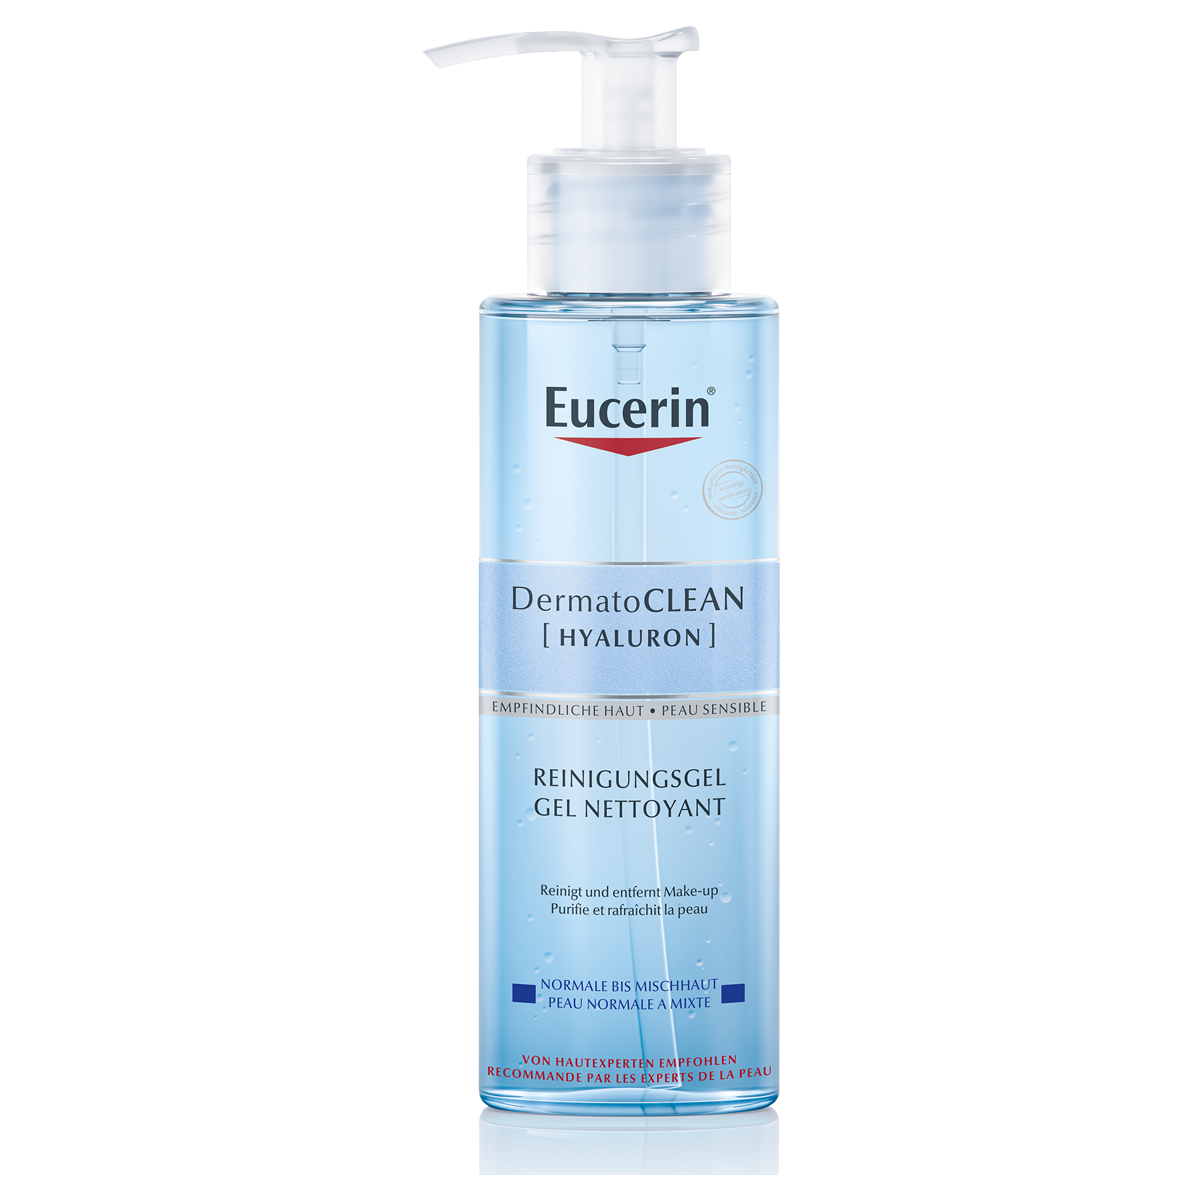 Eucerin DermatoClean Reinigungsgel erfrischend 200 ml